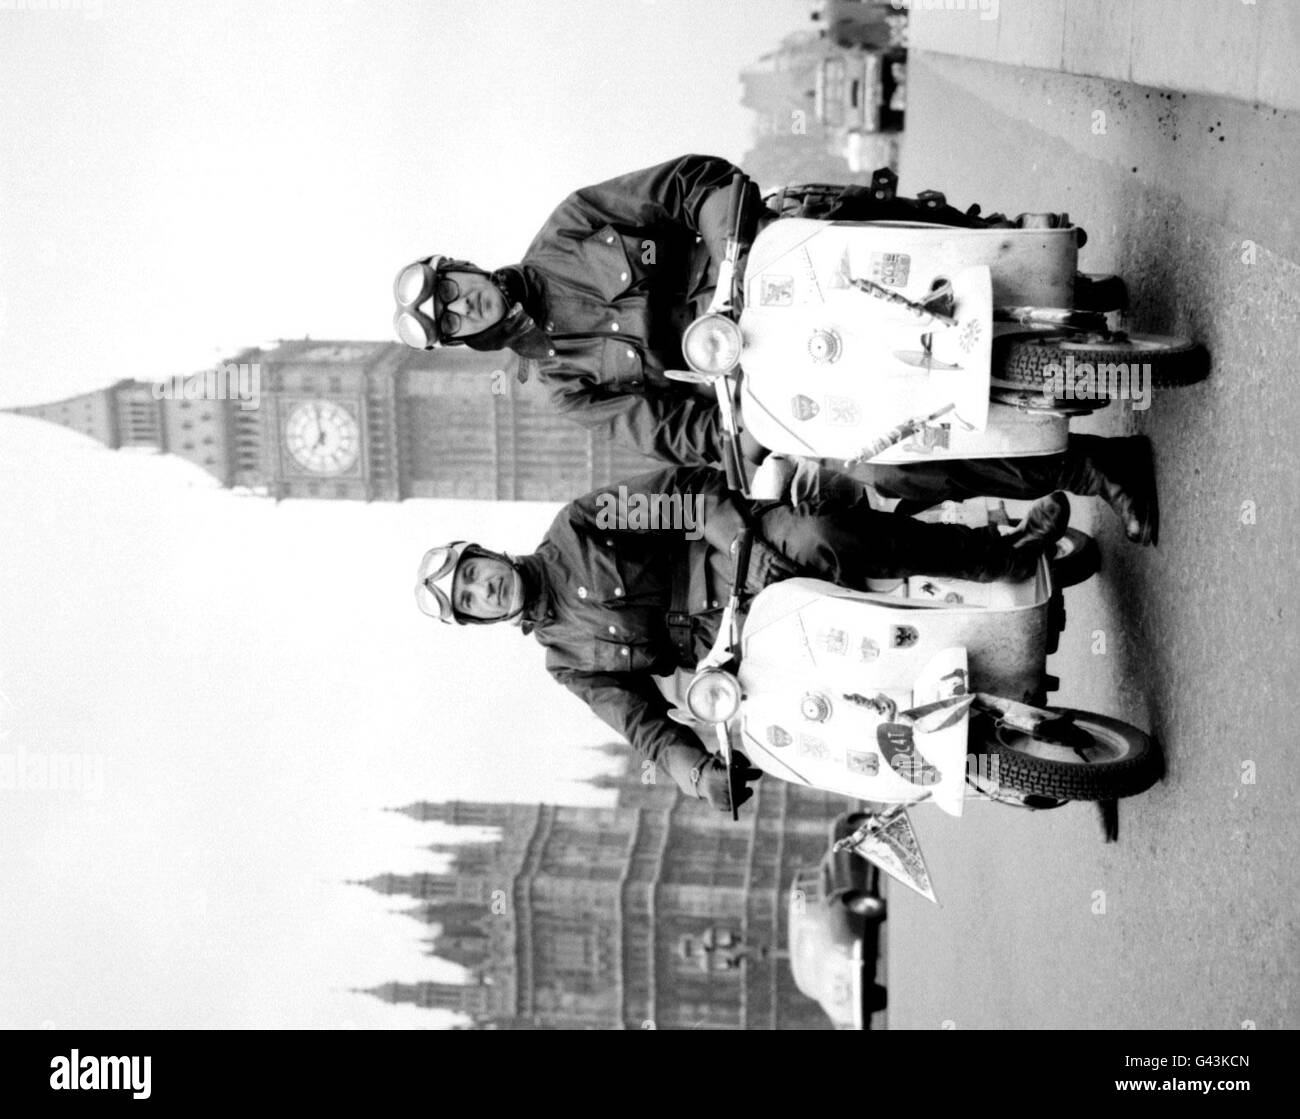 Lino Marchi (links), ein Ingenieur aus der Fabrik, und Massimo Laverda, Sohn des Rollers Erfinder, auf der Westmister Bridge, London, mit 50ccm leichten Laverda Mini-Scootern, auf denen sie den ganzen Weg aus Italien gefahren waren. Stockfoto